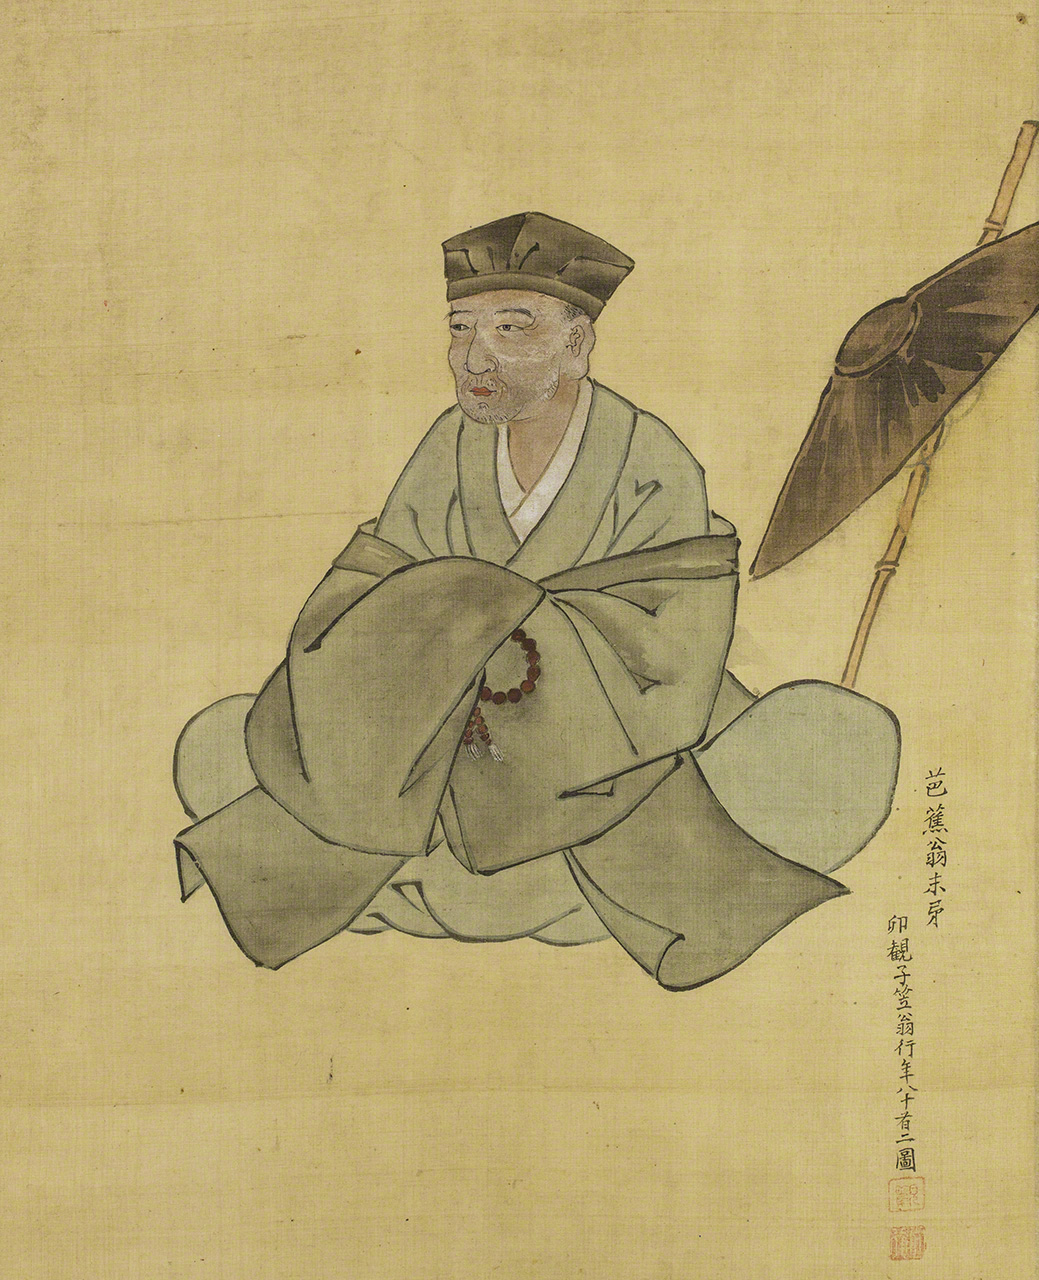 小川破笠的《芭蕉翁像》。小川破笠是江戶中期的畫師、漆工，也是芭蕉的門人。這是一幅由親近之人描繪的肖像畫（圖片：芭蕉翁紀念館藏）